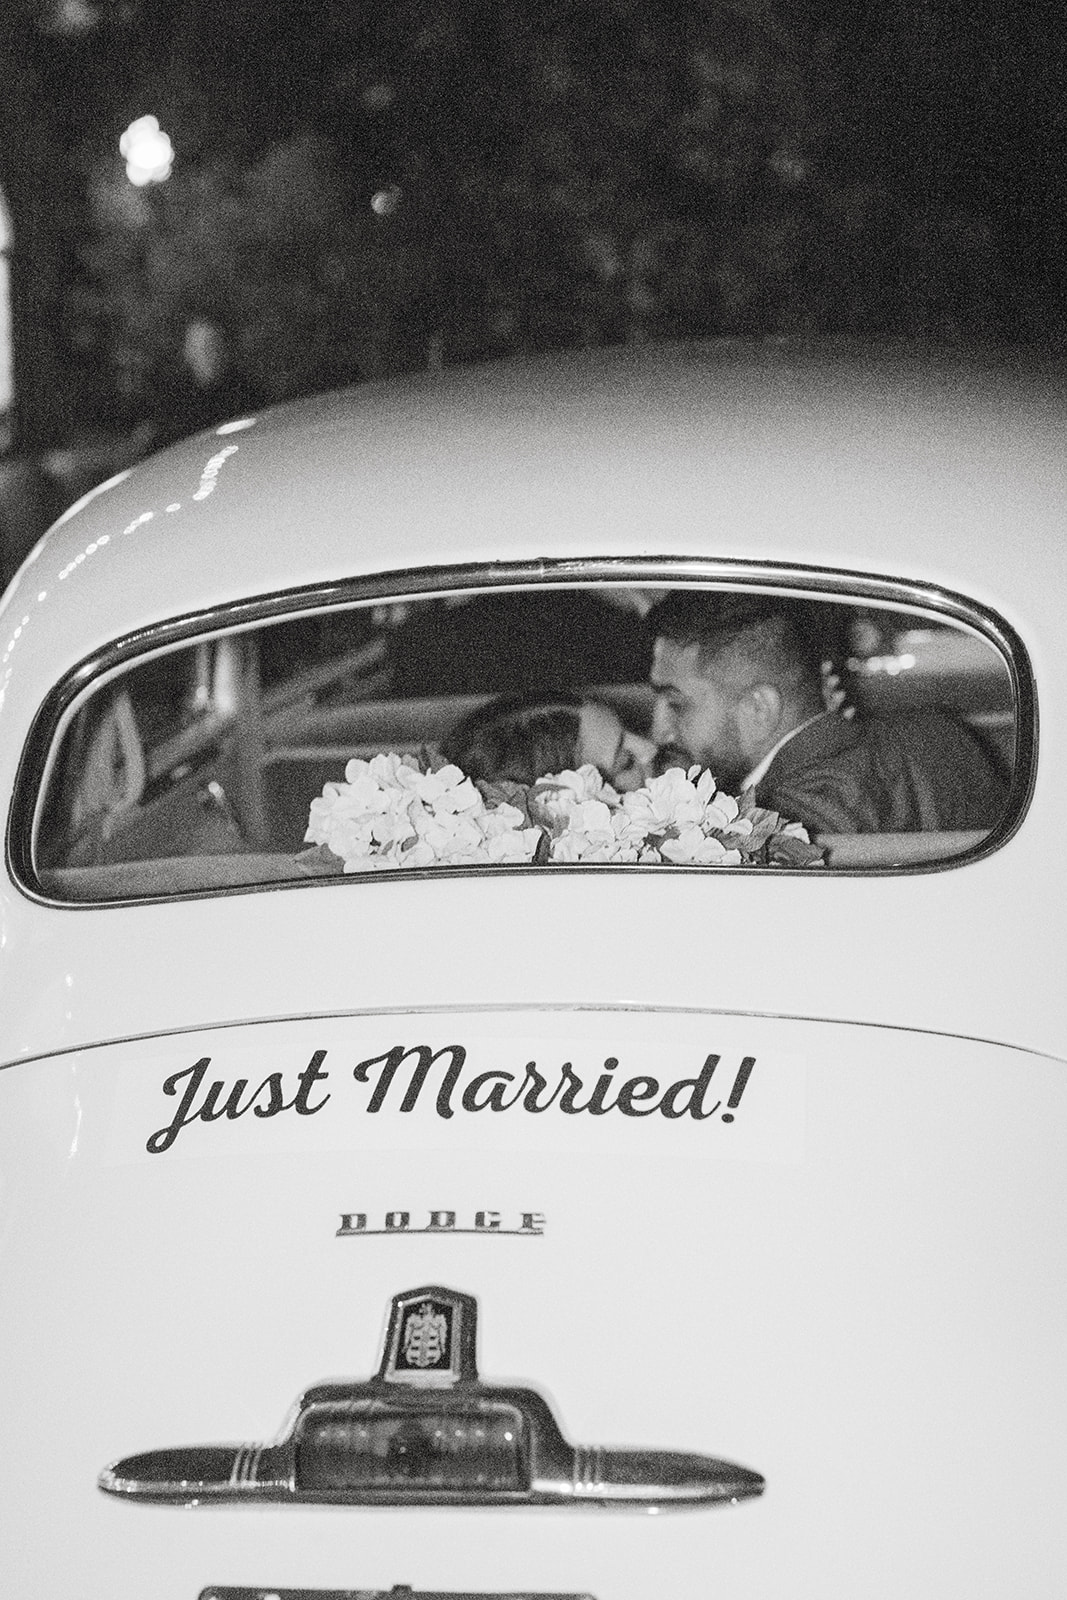 morais vineyard winery virginia bealeton wedding just married bride and groom exit bubbles blowing cute vintage car